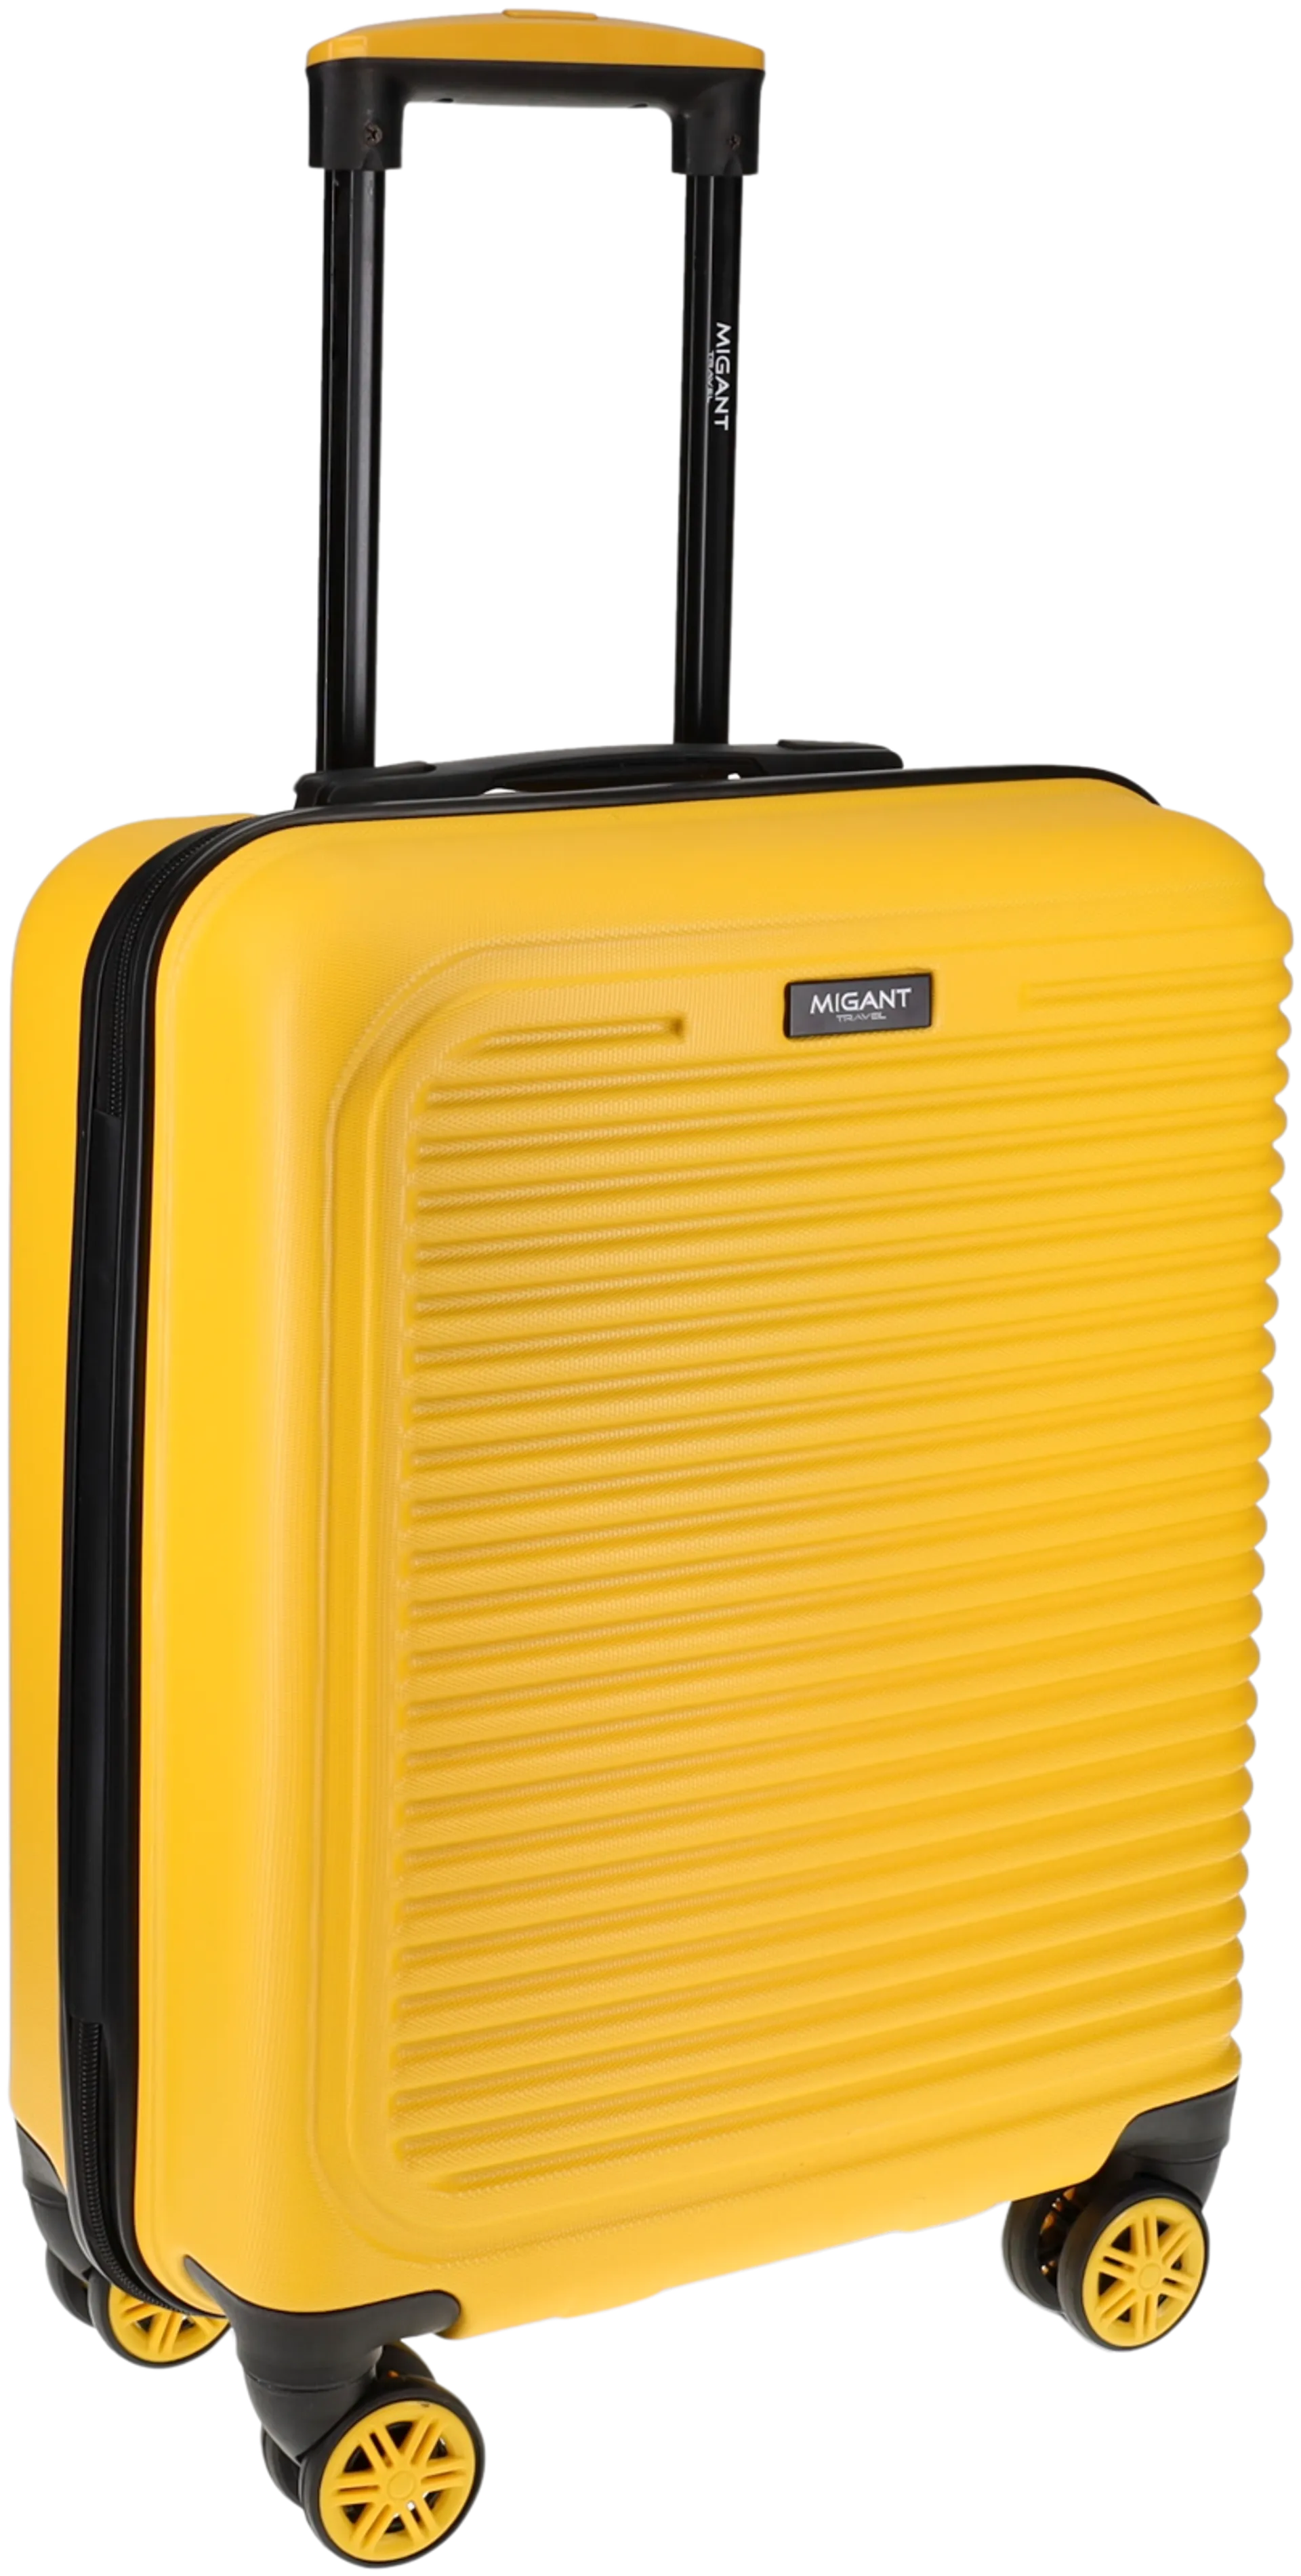 Migant matkalaukku MGT-27 52 cm keltainen - 8